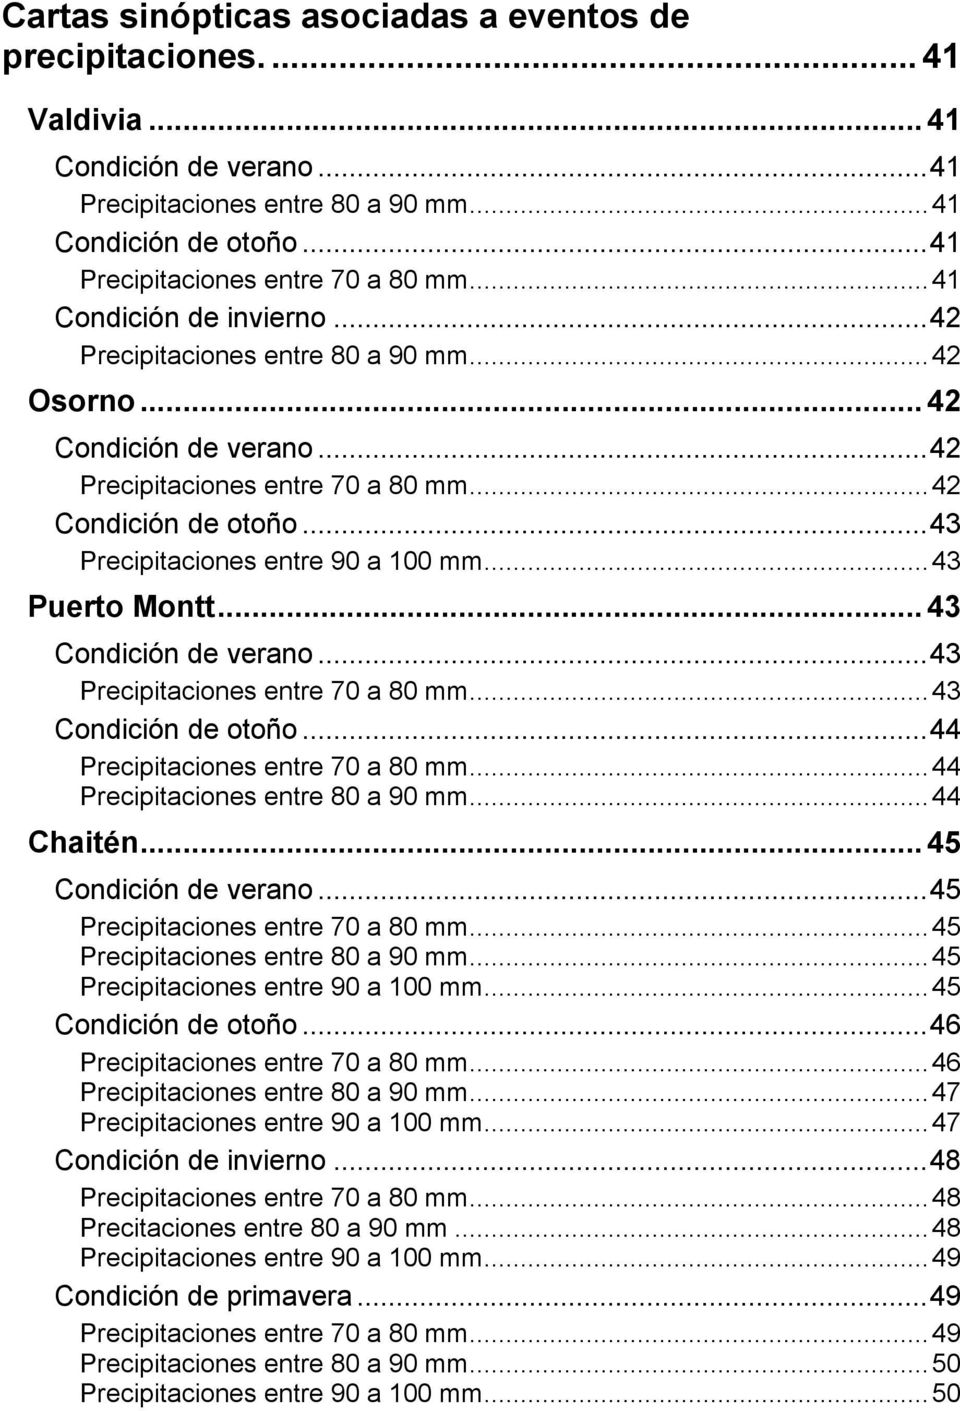 ..43 Precipitaciones entre 90 a 100 mm...43 Puerto Montt...43 Condición de verano...43 Precipitaciones entre 70 a 80 mm...43 Condición de otoño...44 Precipitaciones entre 70 a 80 mm.